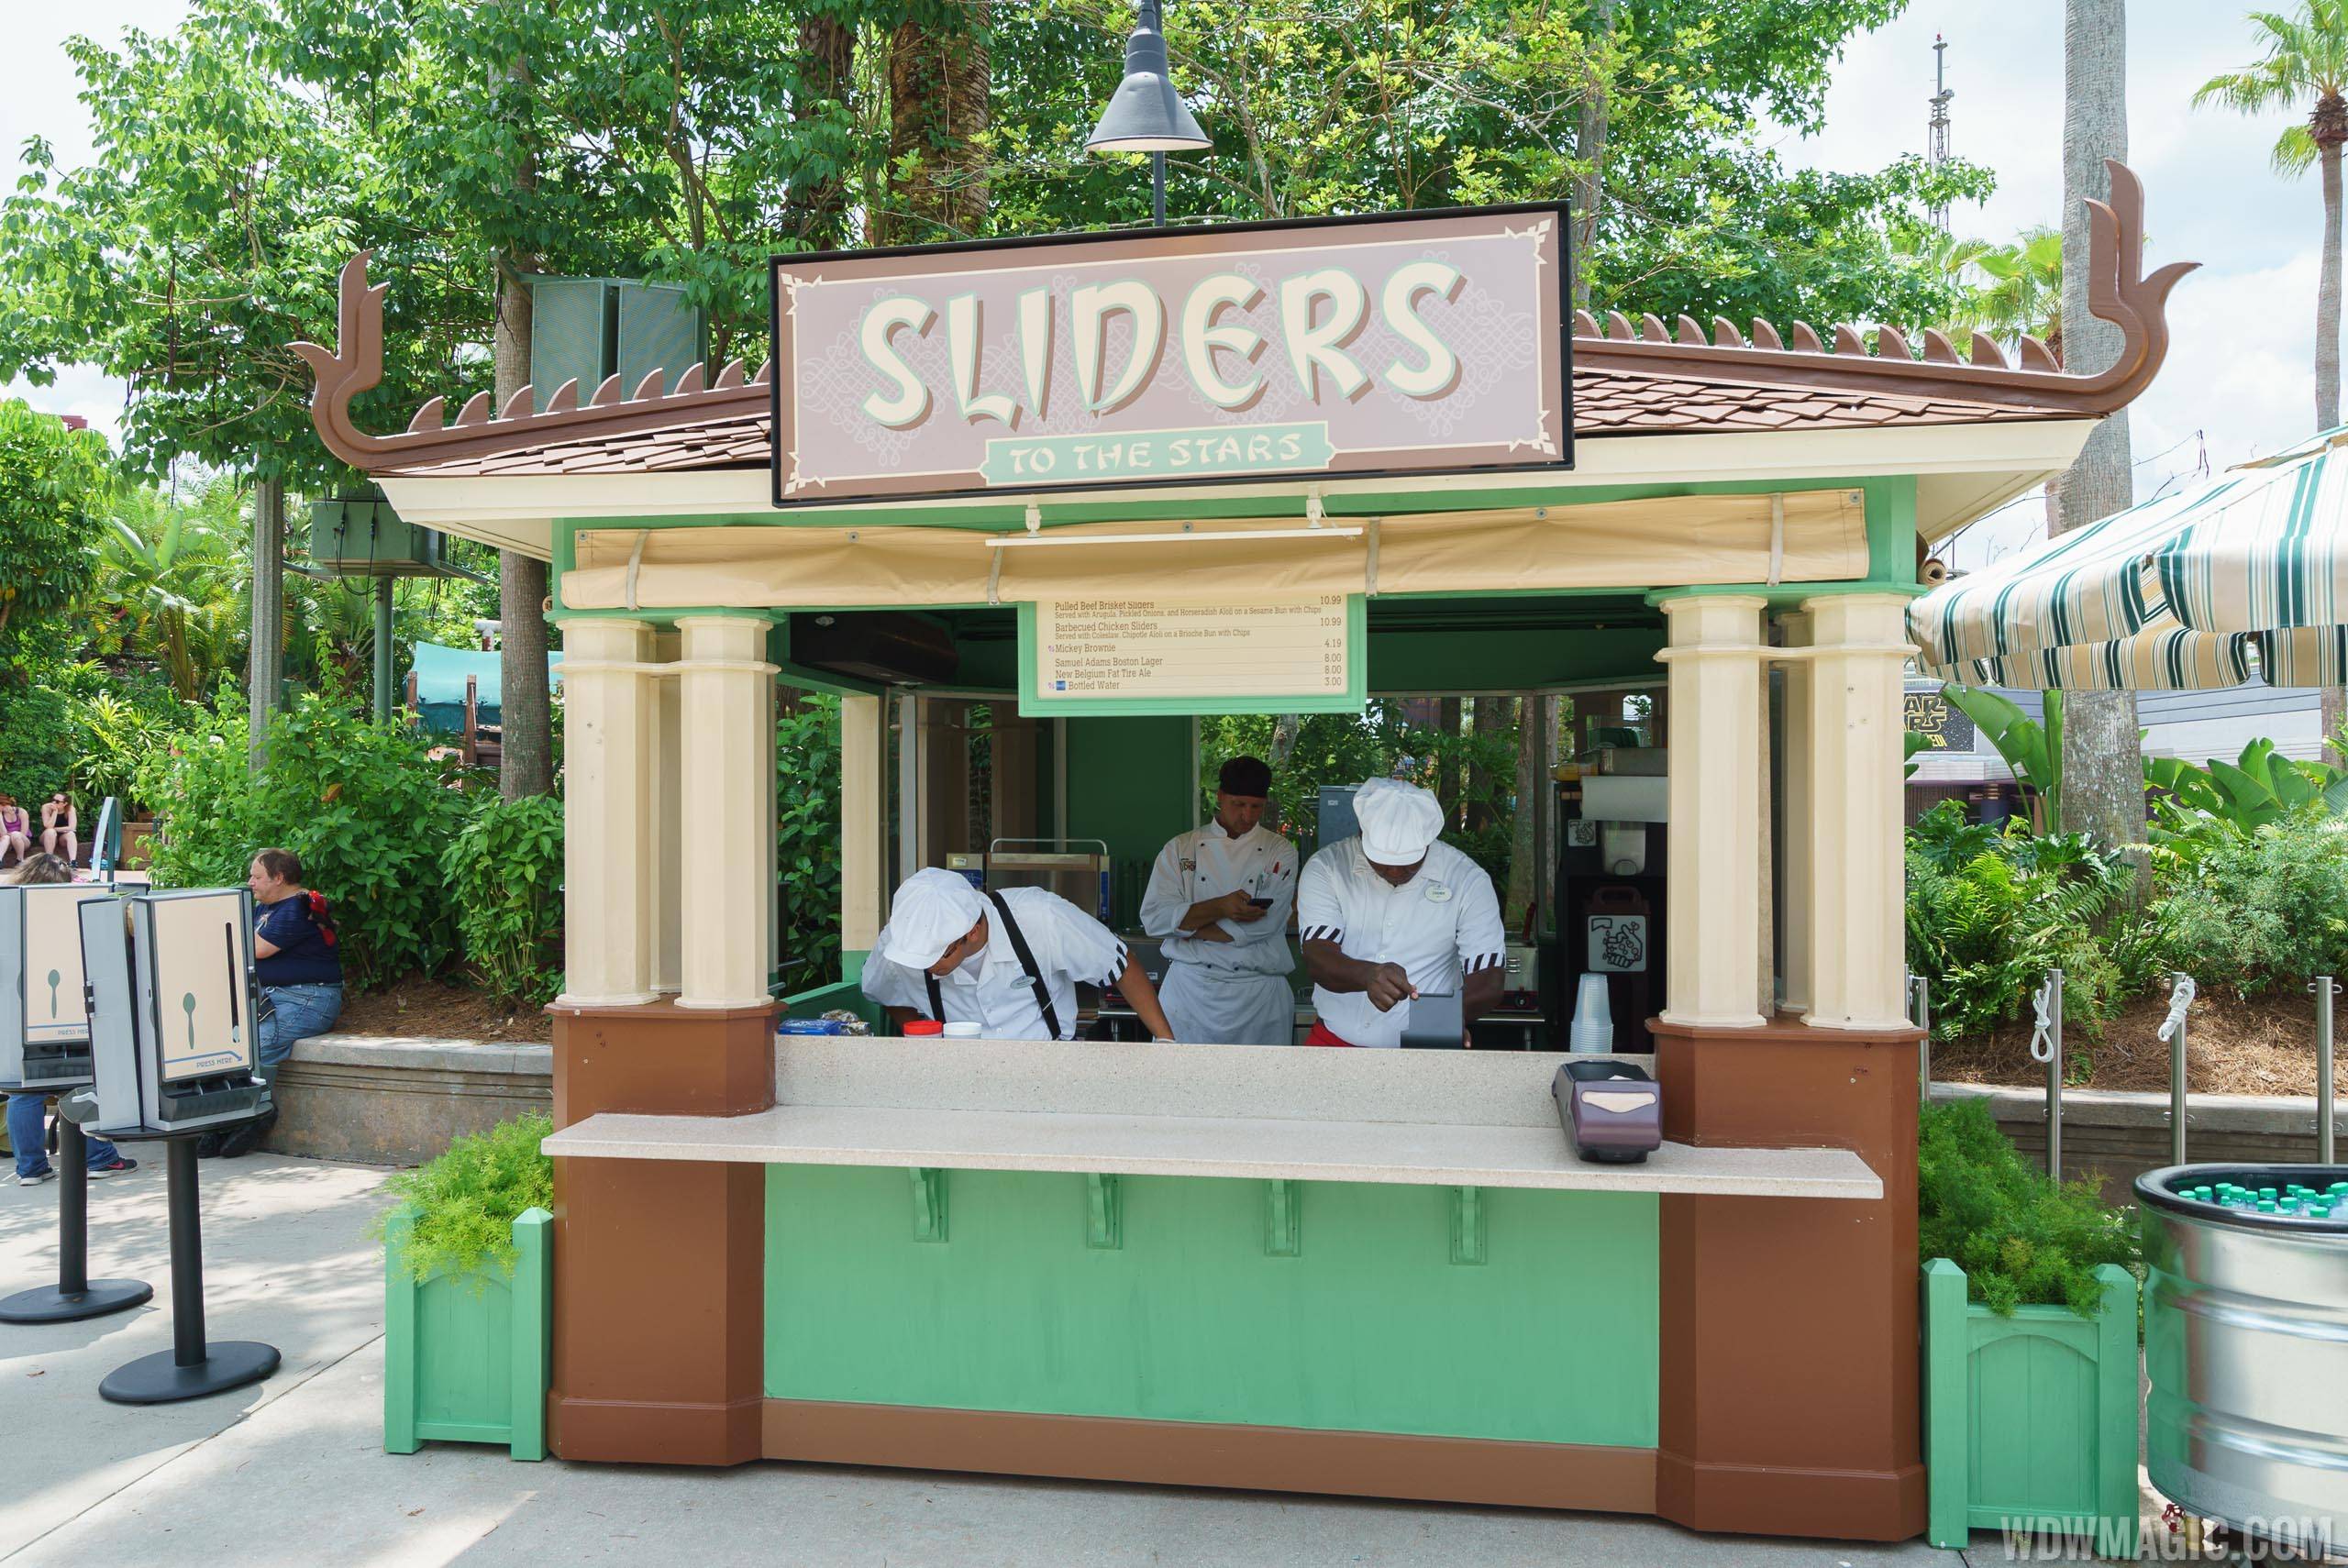 Sliders to the Stars kiosk